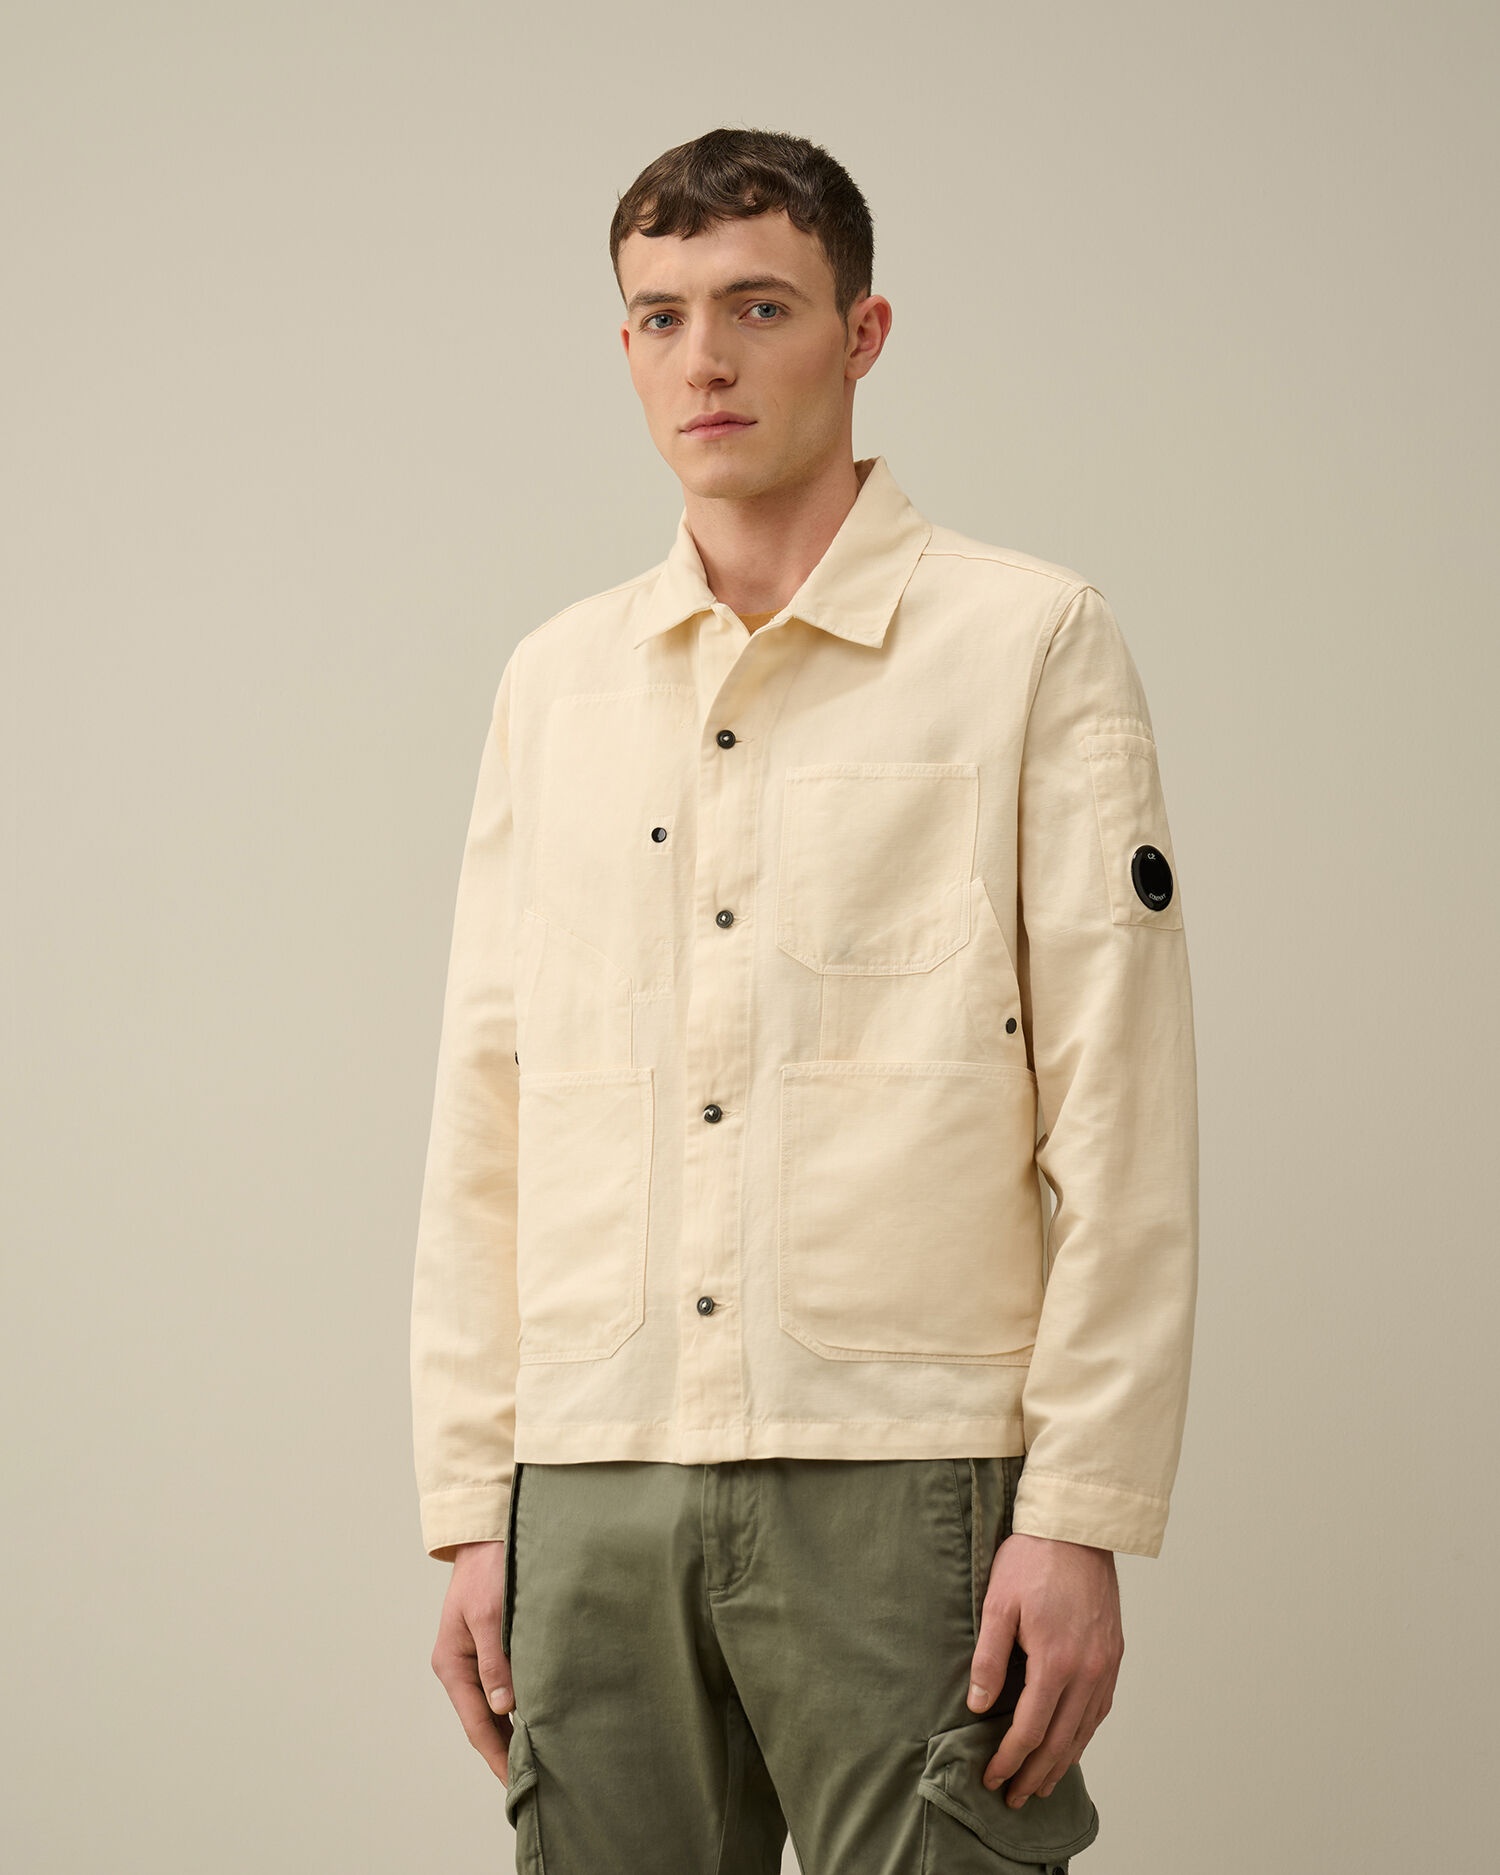 Cotton/Linen Overshirt - 2